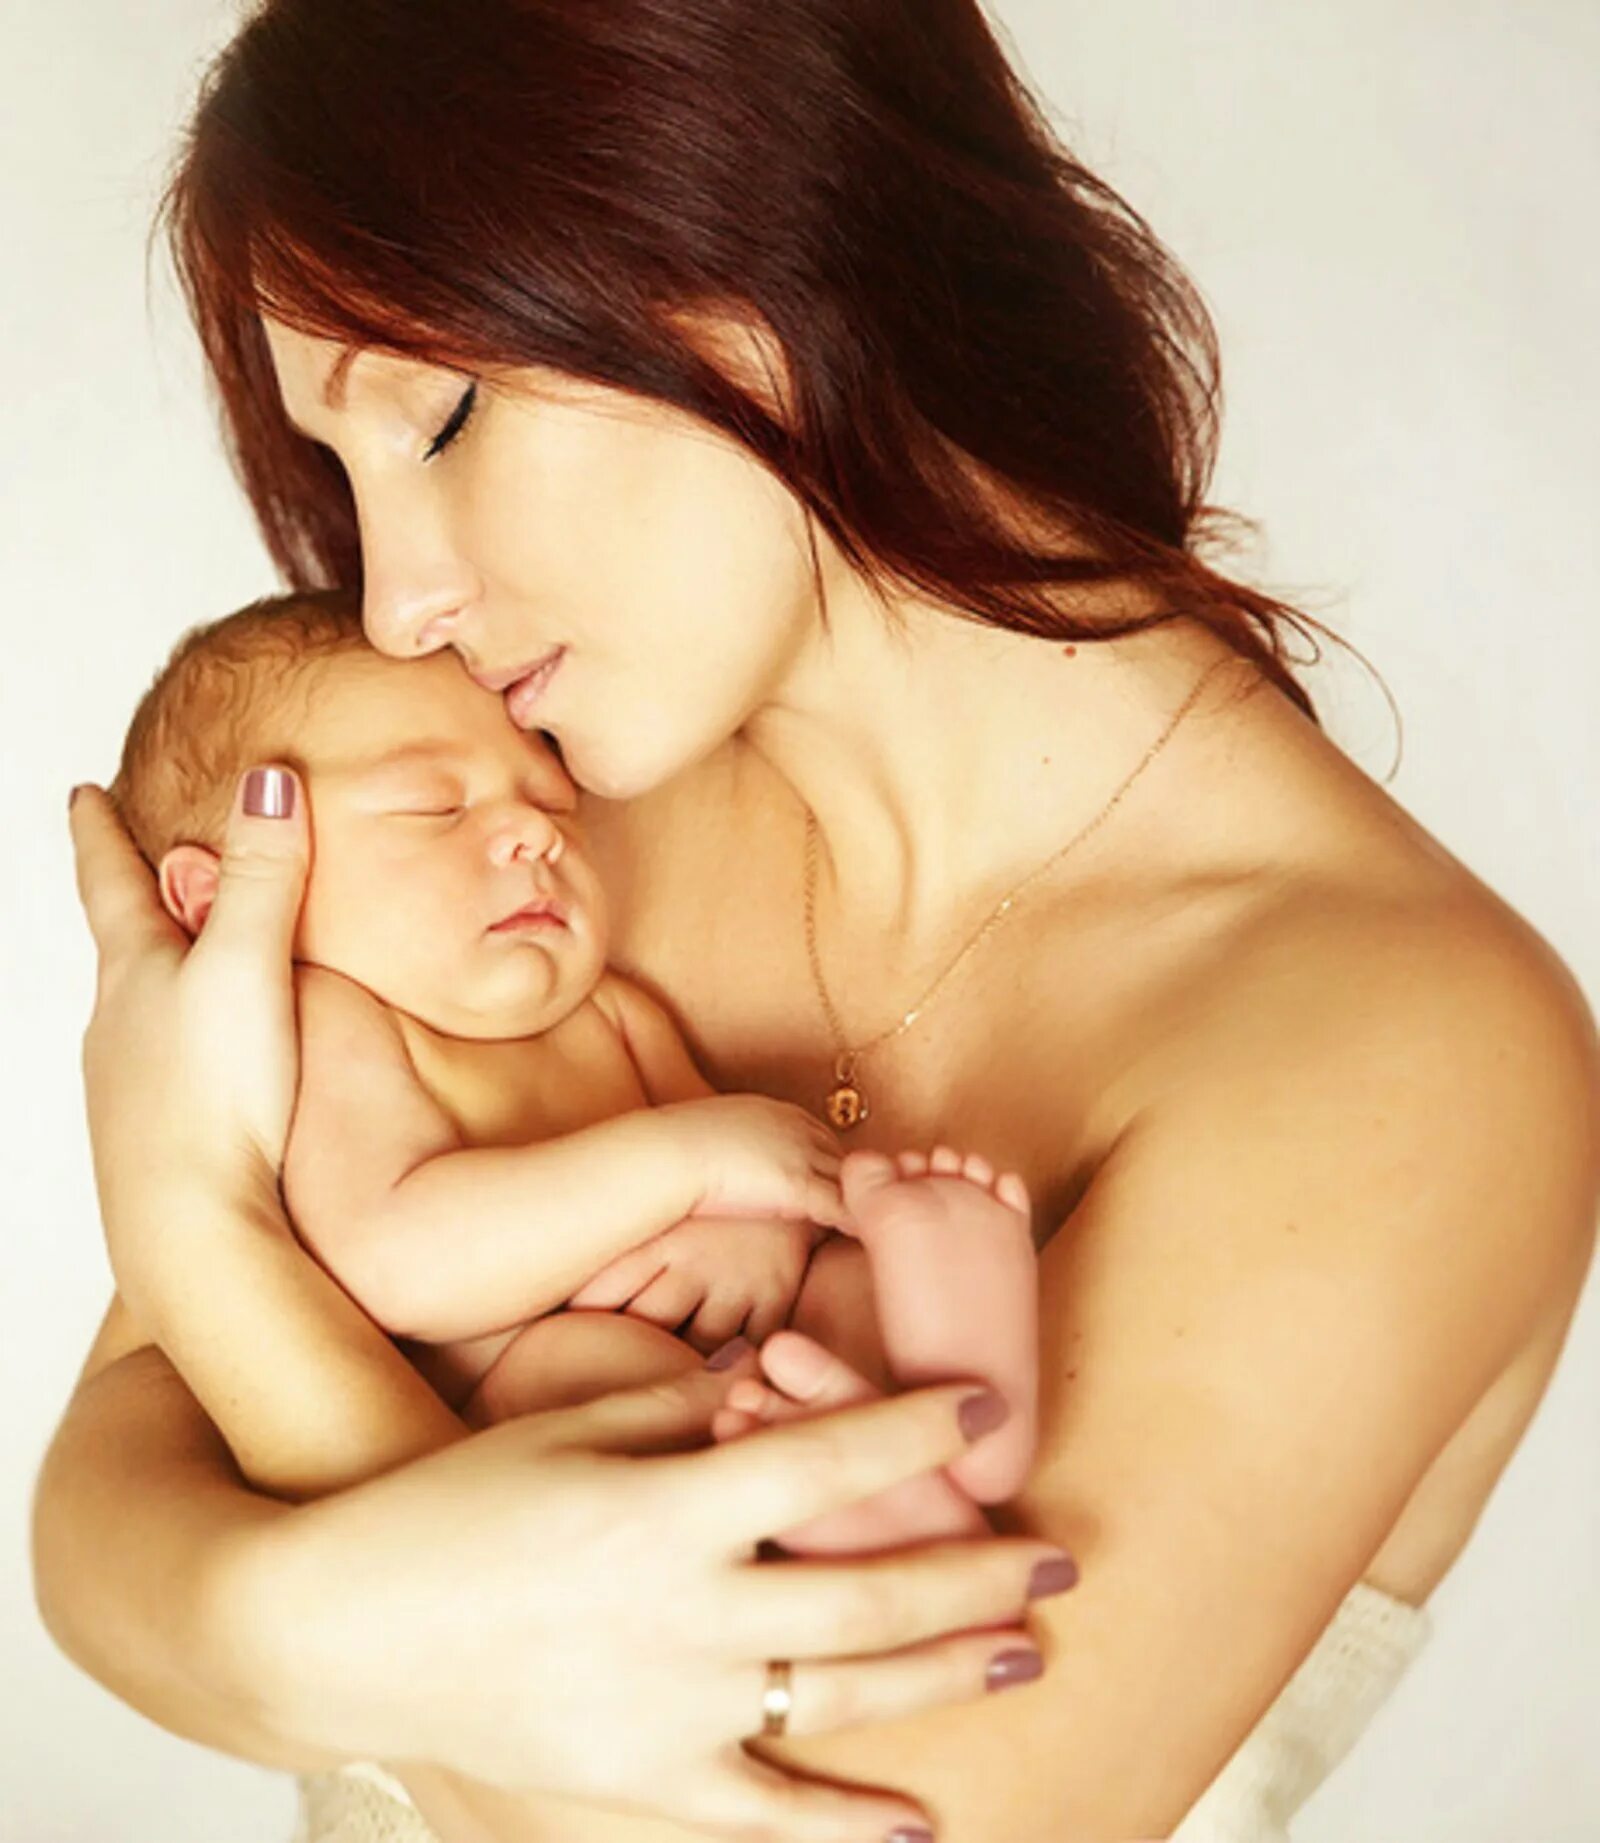 Пример любви матери к ребенку. Мама с младенцем. Любовь мамы к ребенку. Женщина с младенцем на руках. Любовь матери к младенцу.